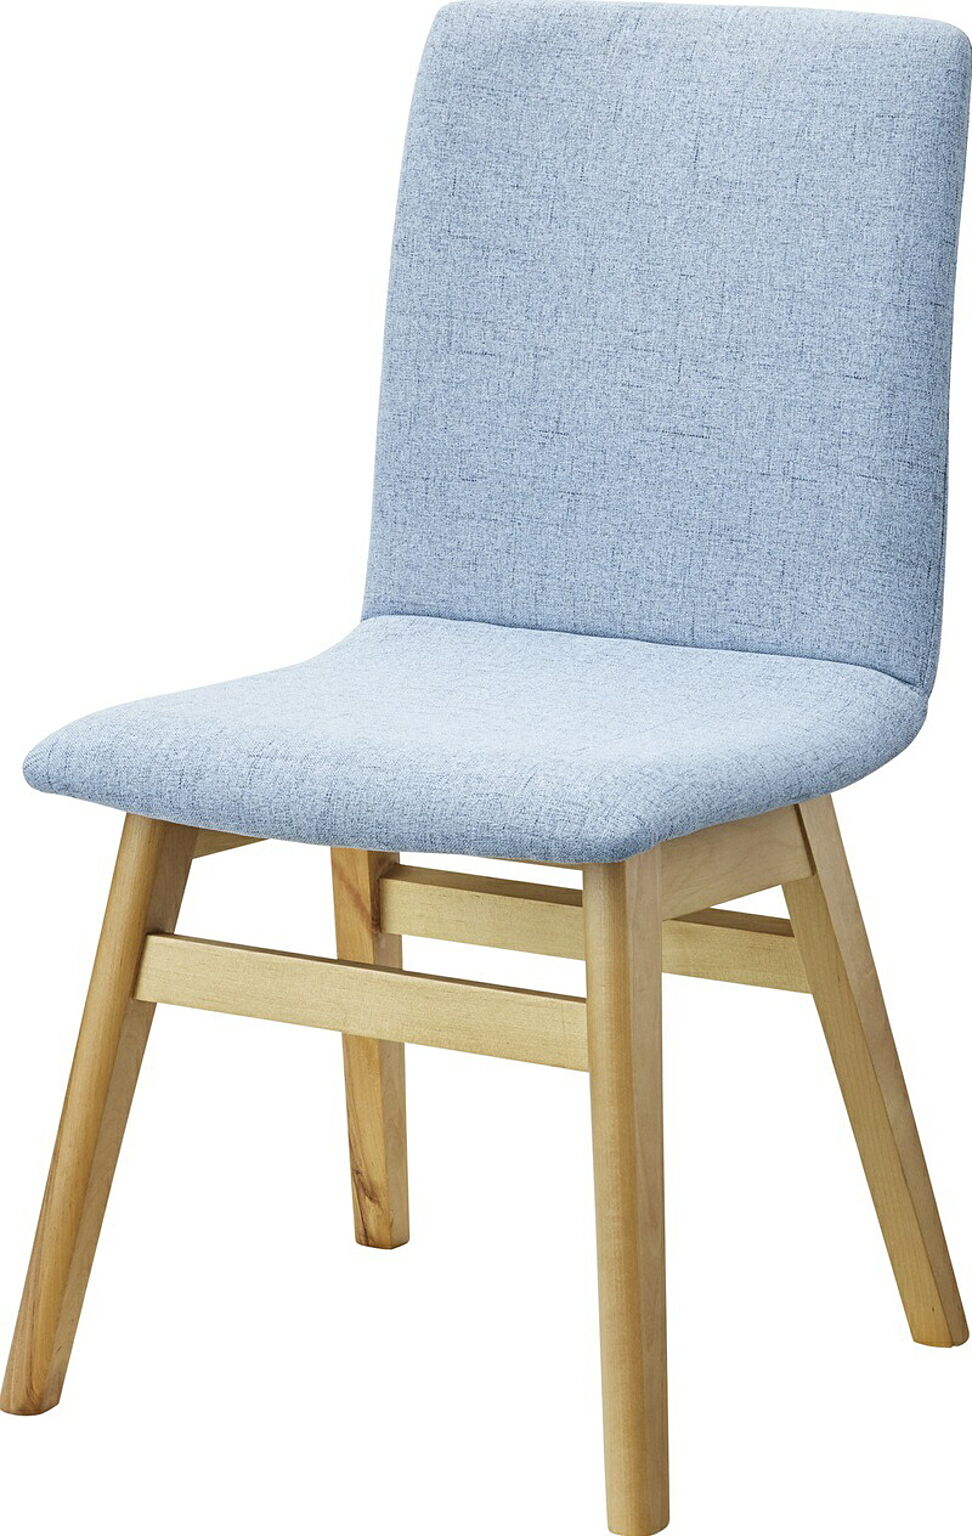 ダイニングチェア W45×D53×H81×SH43 ライトブルー チェア ダイニングチェア ファブリックチェア 木製 食堂椅子 布地 おしゃれ ナチュラル 北欧 シンプル かわいい 完成品 食卓用椅子